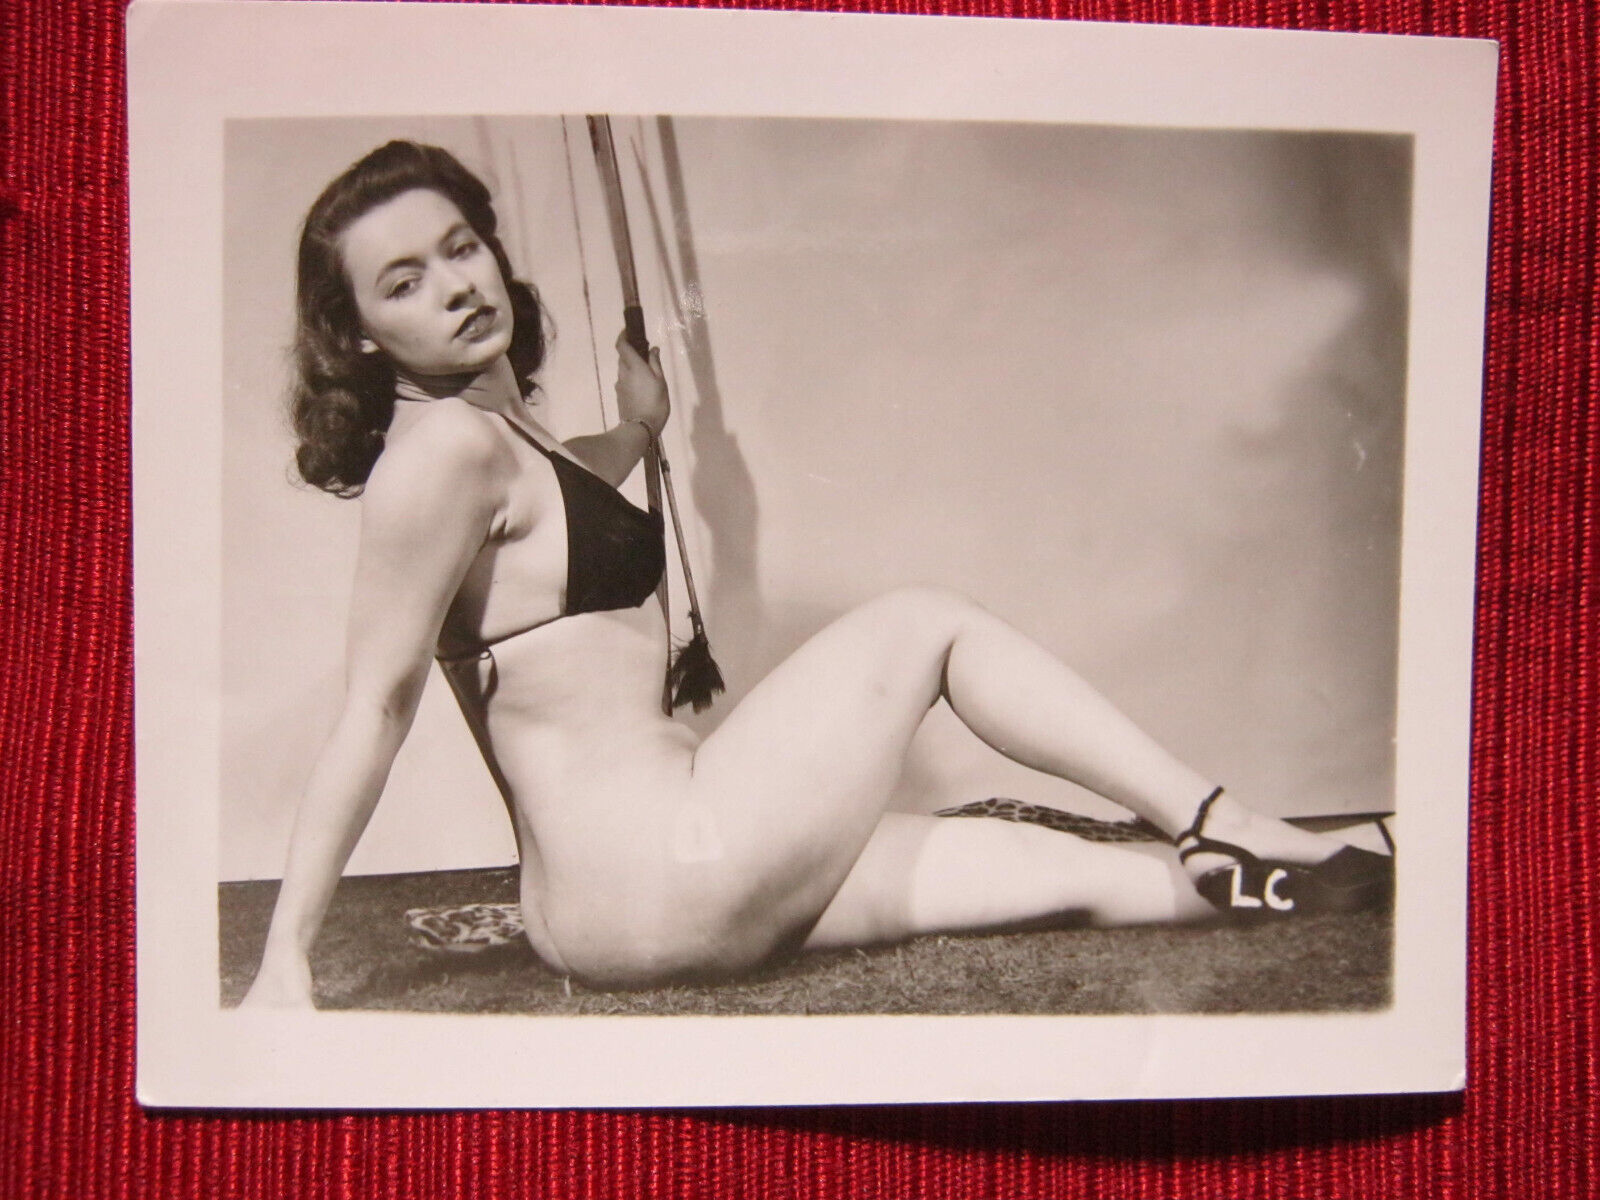 June King, Vintage Original 1950s Irving Klaw Photo, c. 1952